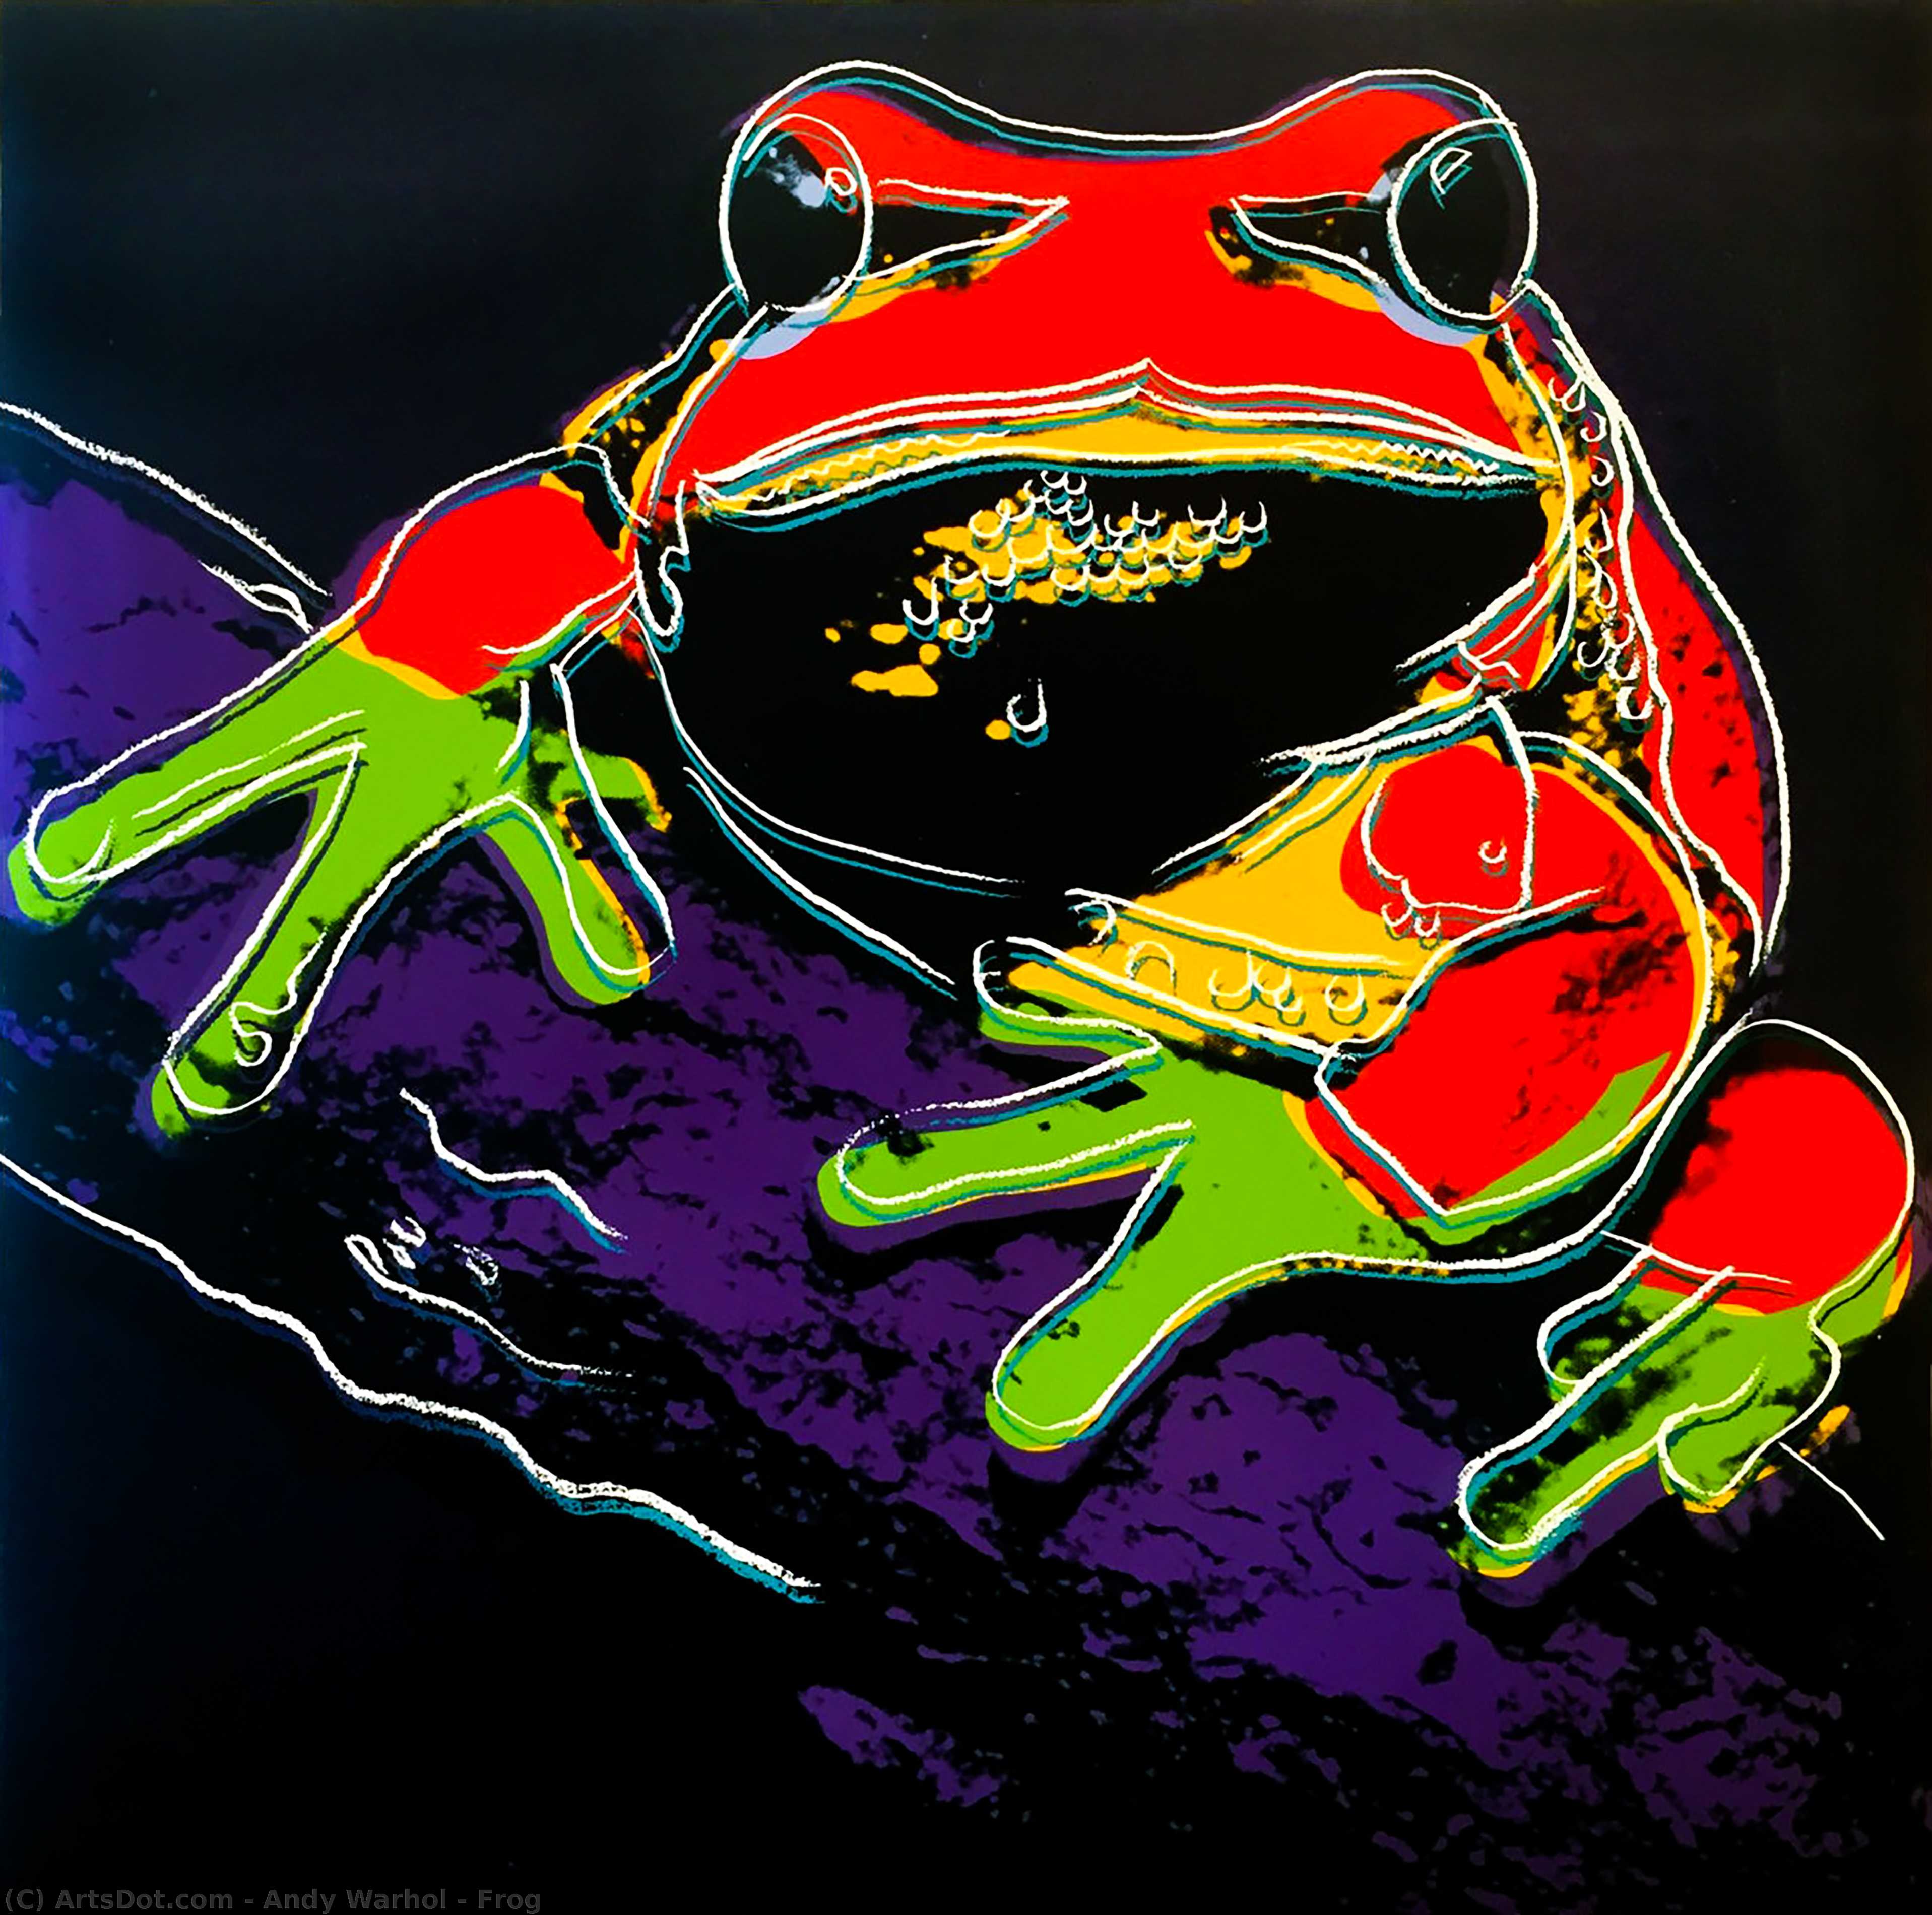 WikiOO.org - Энциклопедия изобразительного искусства - Живопись, Картины  Andy Warhol - лягушки